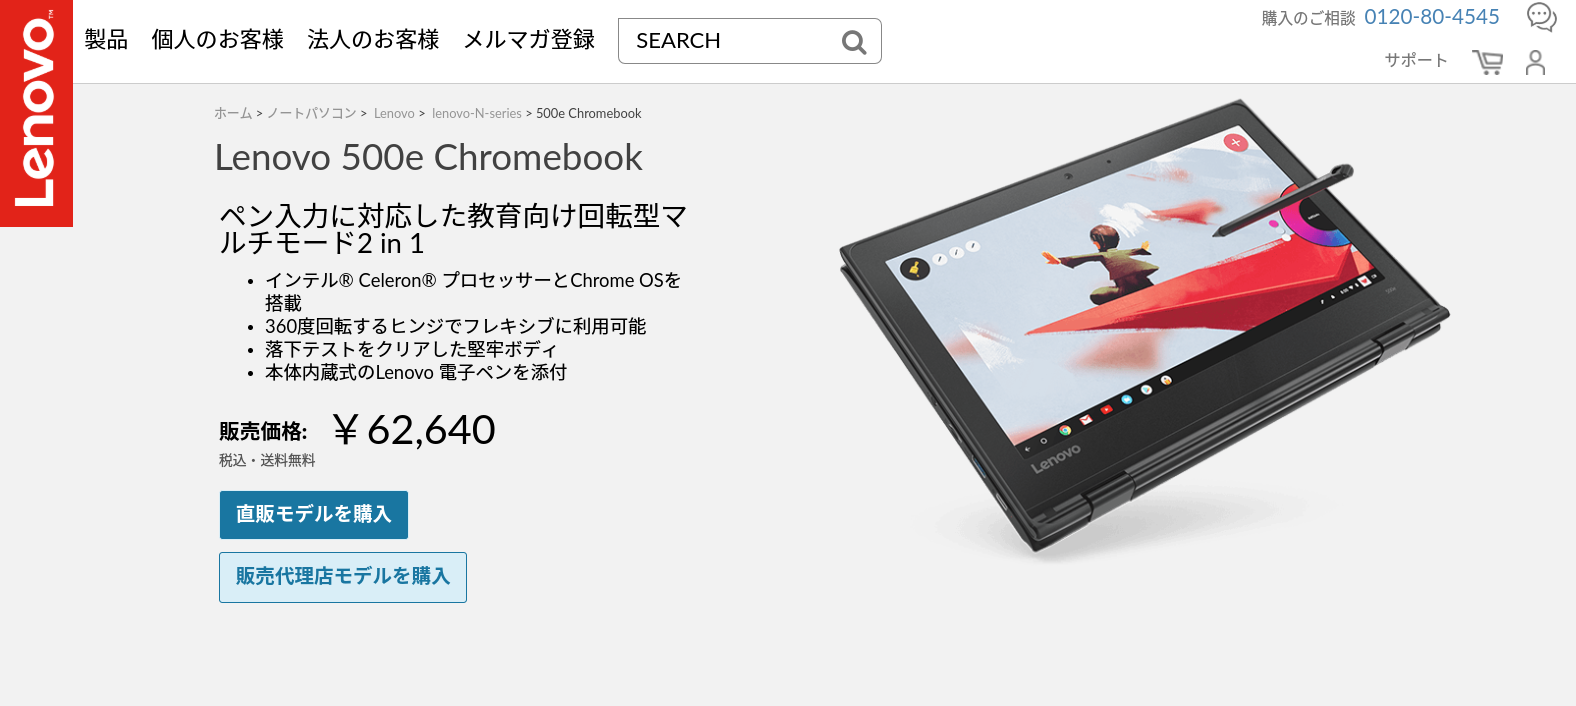 Lenovo 500e Chromebook | ペン入力に対応した教育向け回転型マルチモード2 in 1 | レノボジャパン